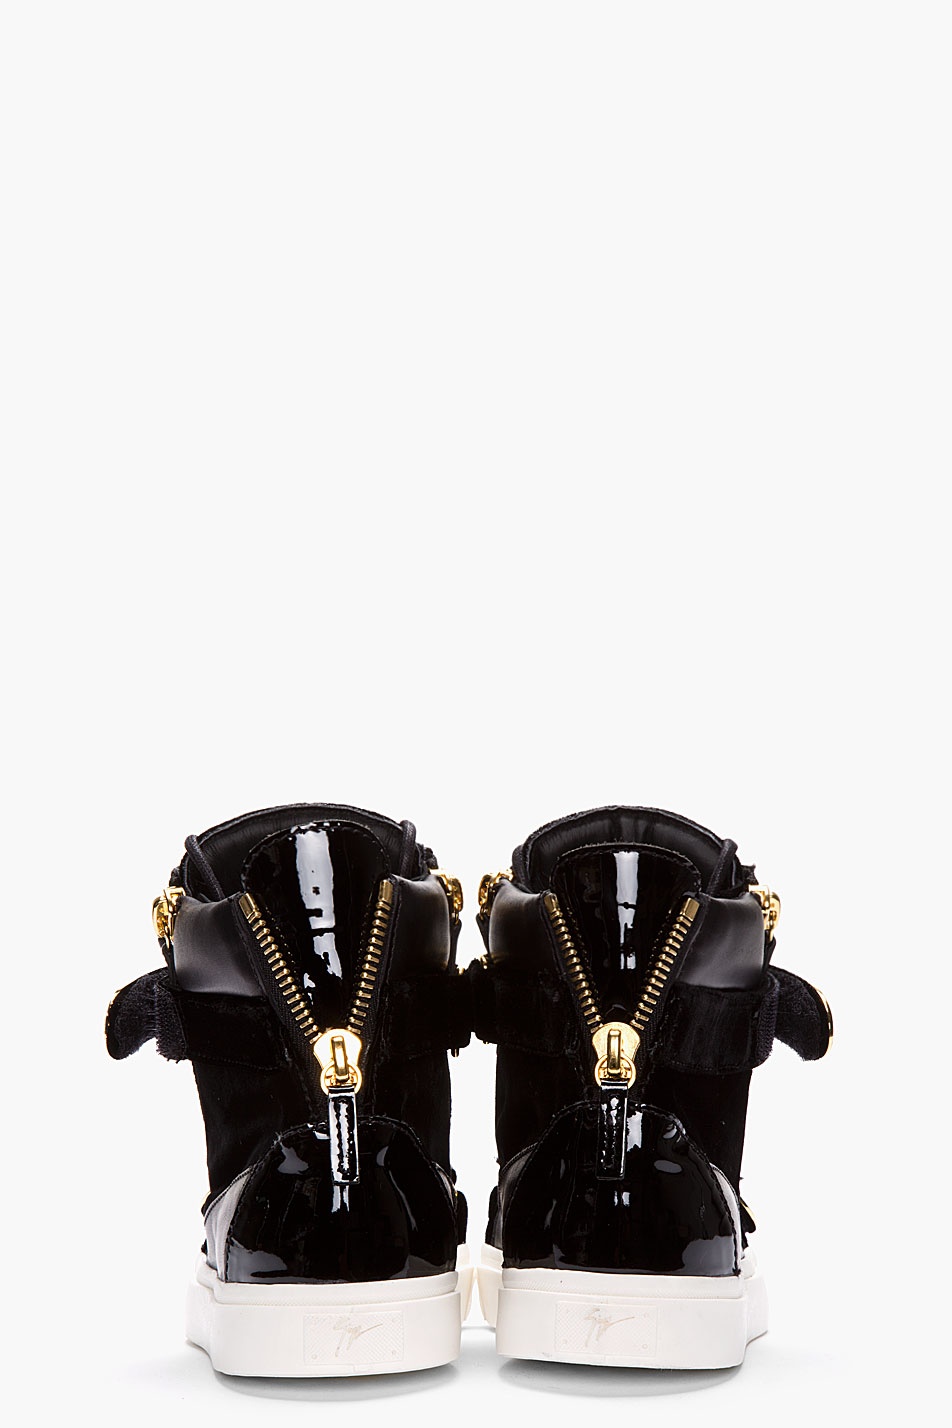 Giuseppe zanotti Black Velvet Swarovski Crystal Sneakers in Black for ...